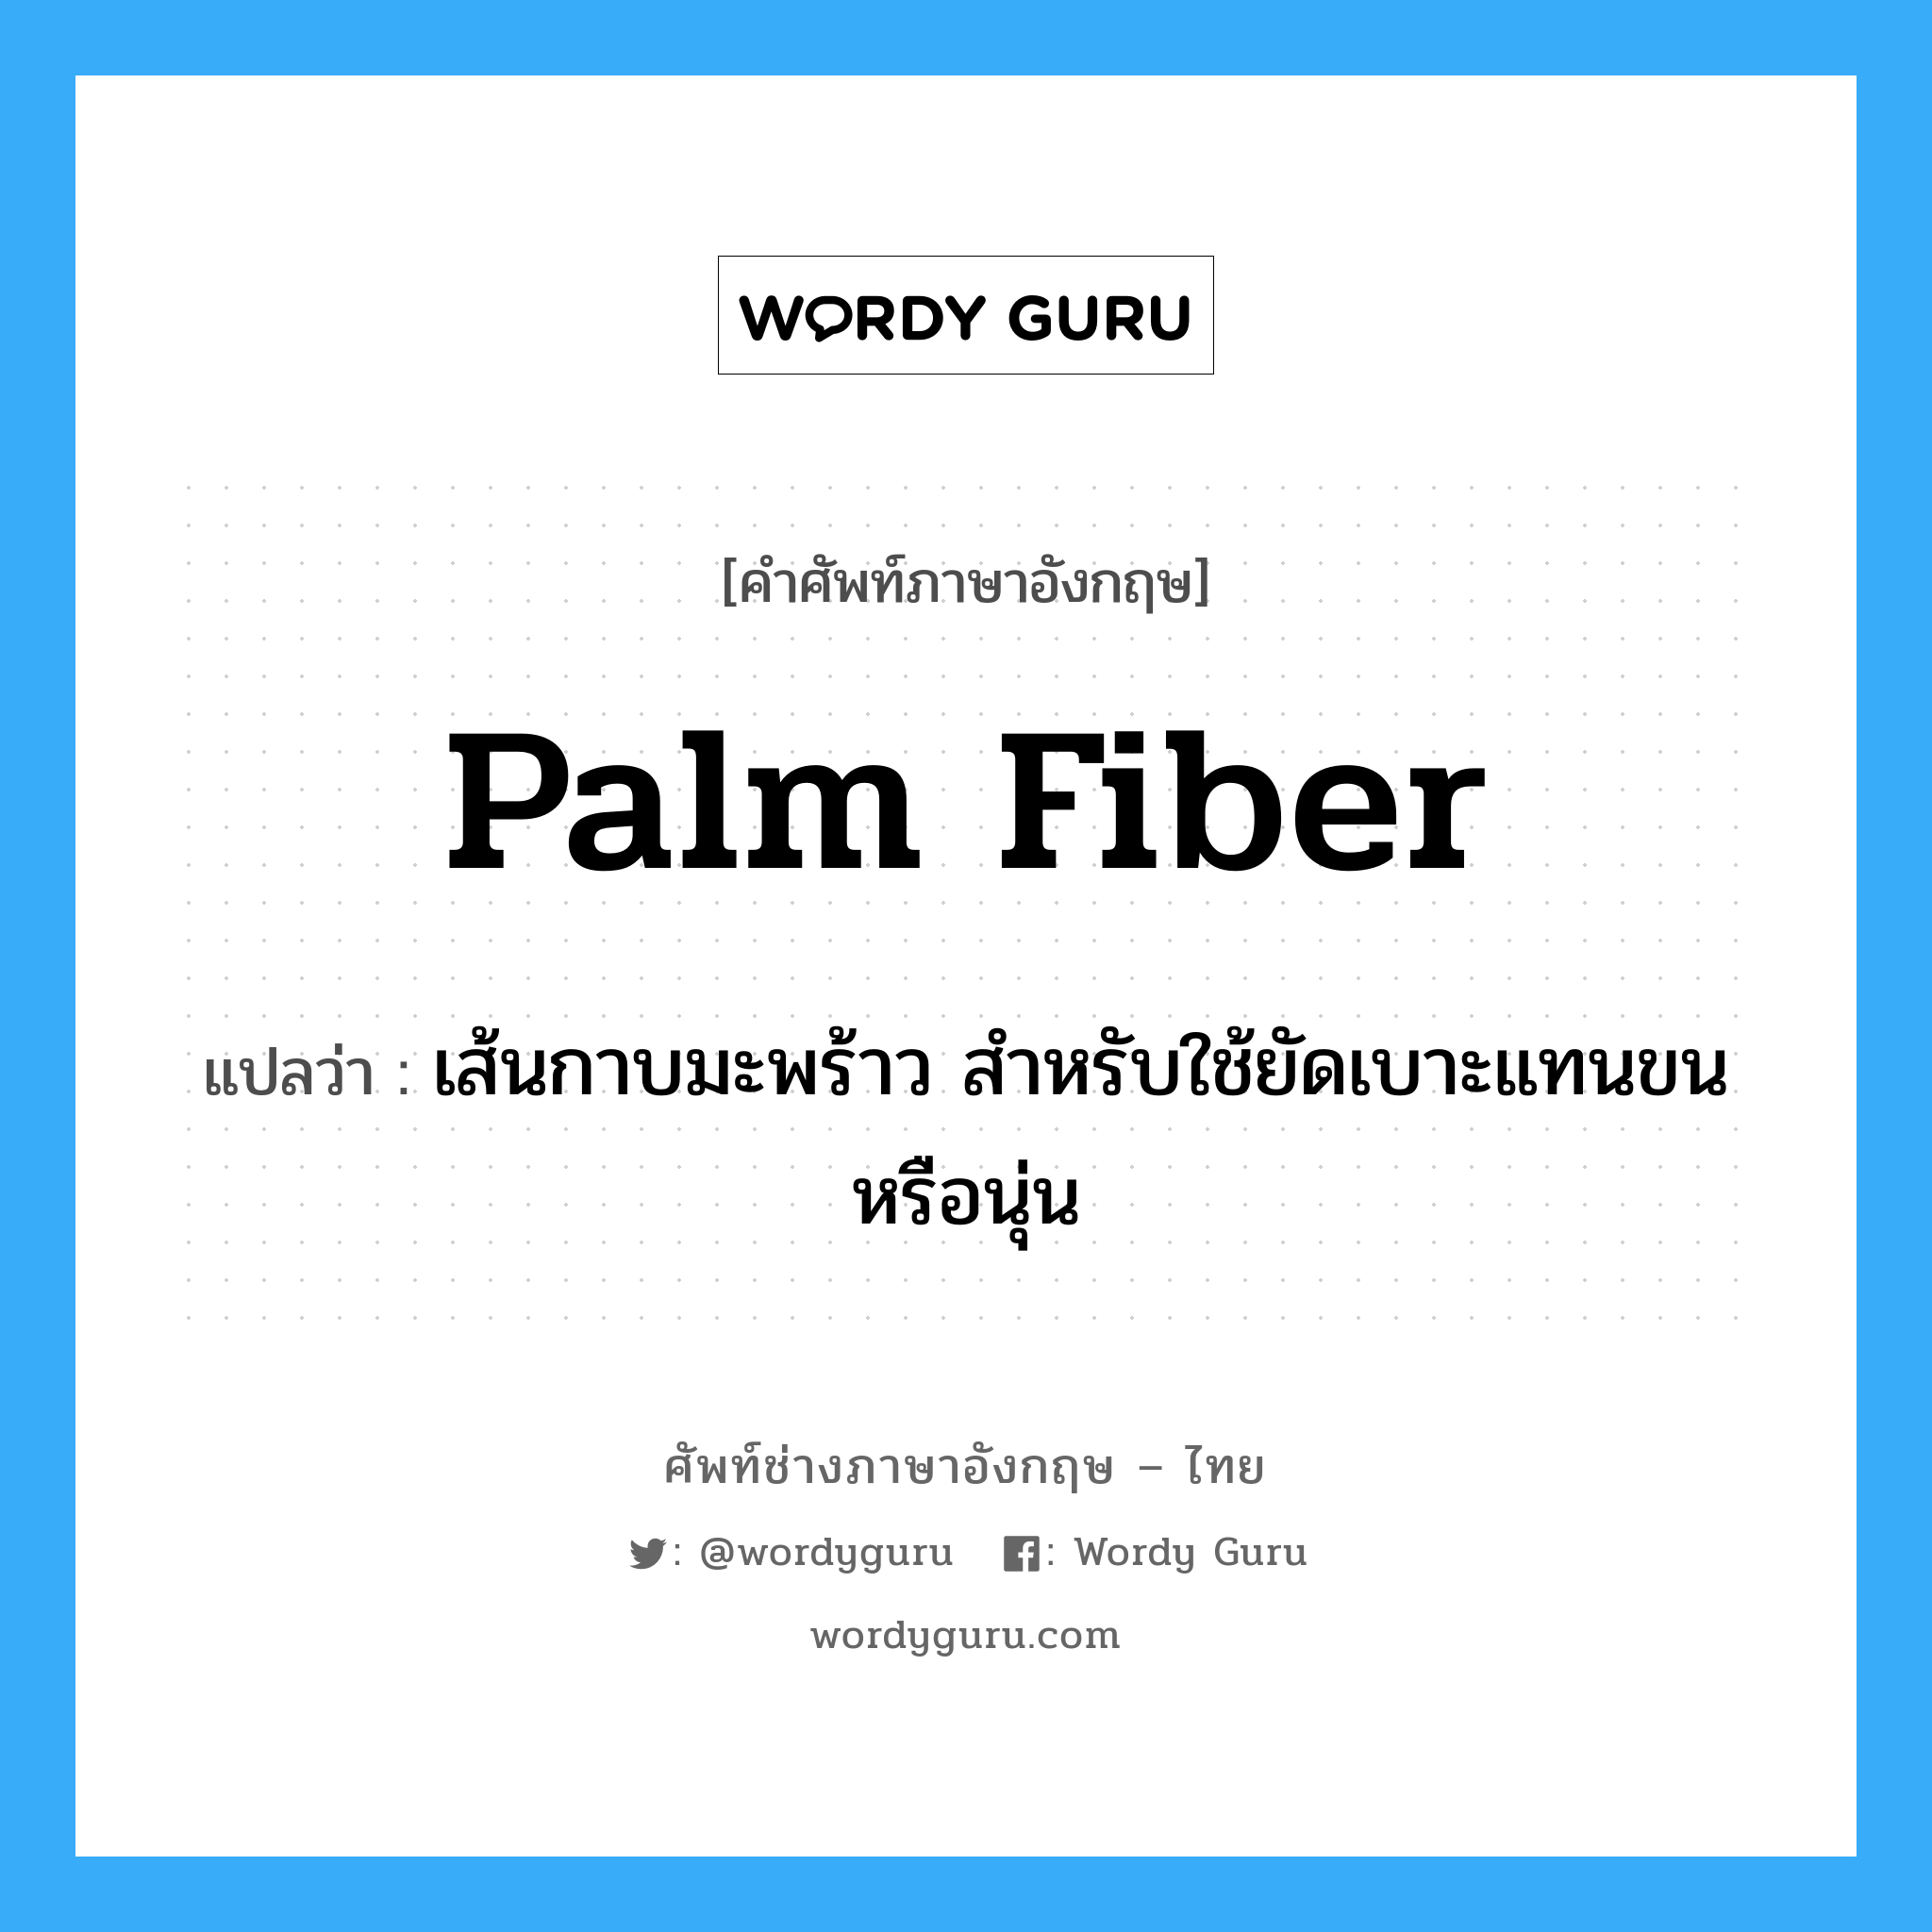 palm fiber แปลว่า?, คำศัพท์ช่างภาษาอังกฤษ - ไทย palm fiber คำศัพท์ภาษาอังกฤษ palm fiber แปลว่า เส้นกาบมะพร้าว สำหรับใช้ยัดเบาะแทนขนหรือนุ่น